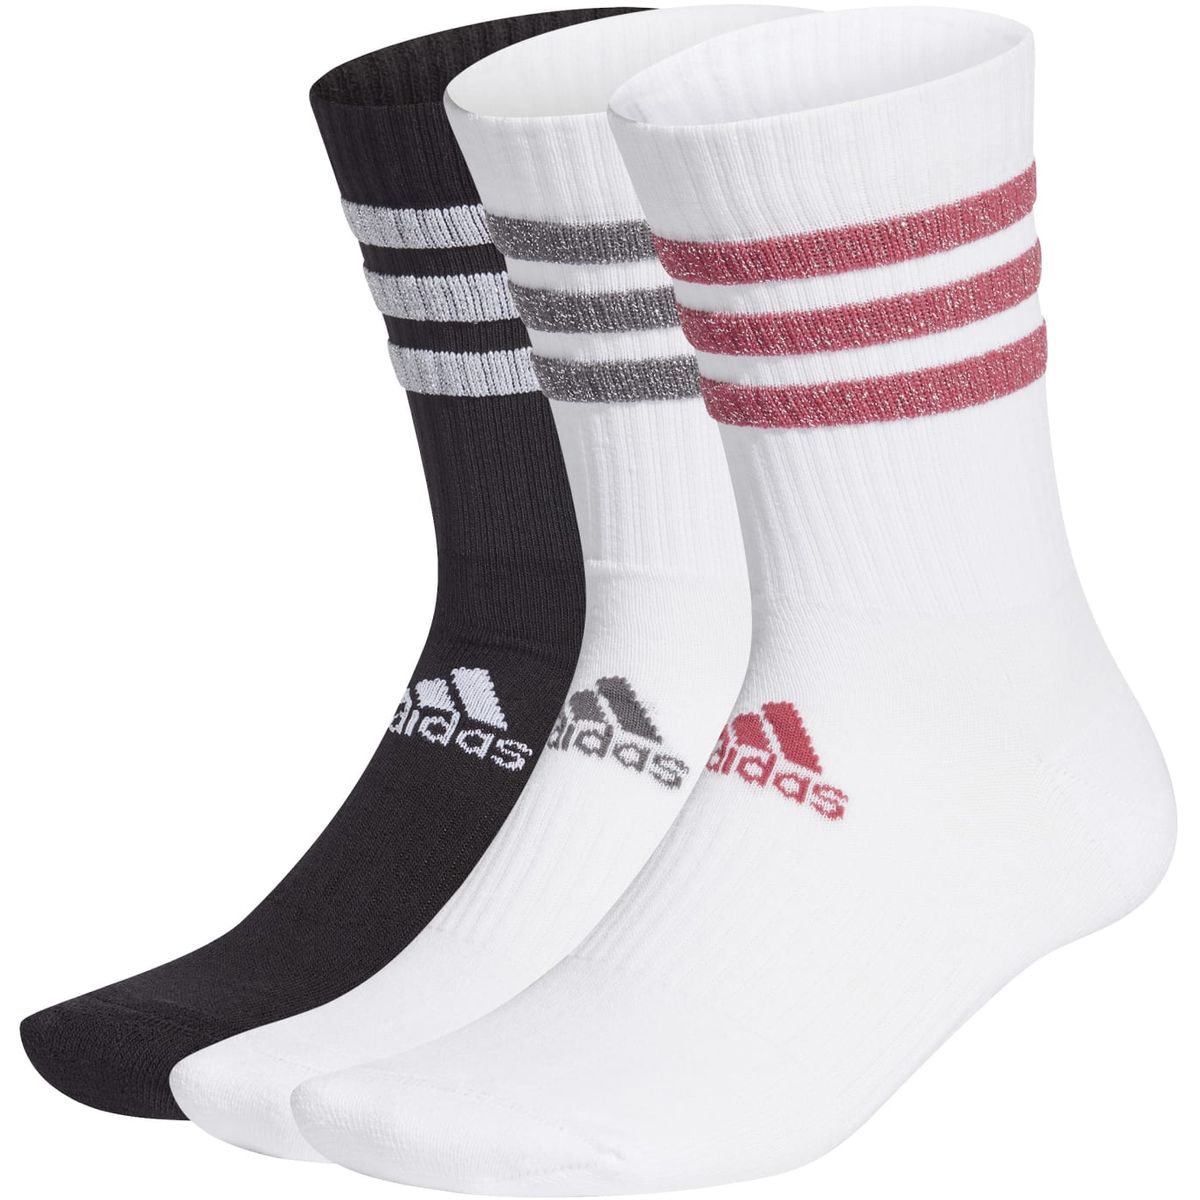 Adidas Glam 3-Streifen Cushioned Sport Crew Socken, 3 Paar Unisex